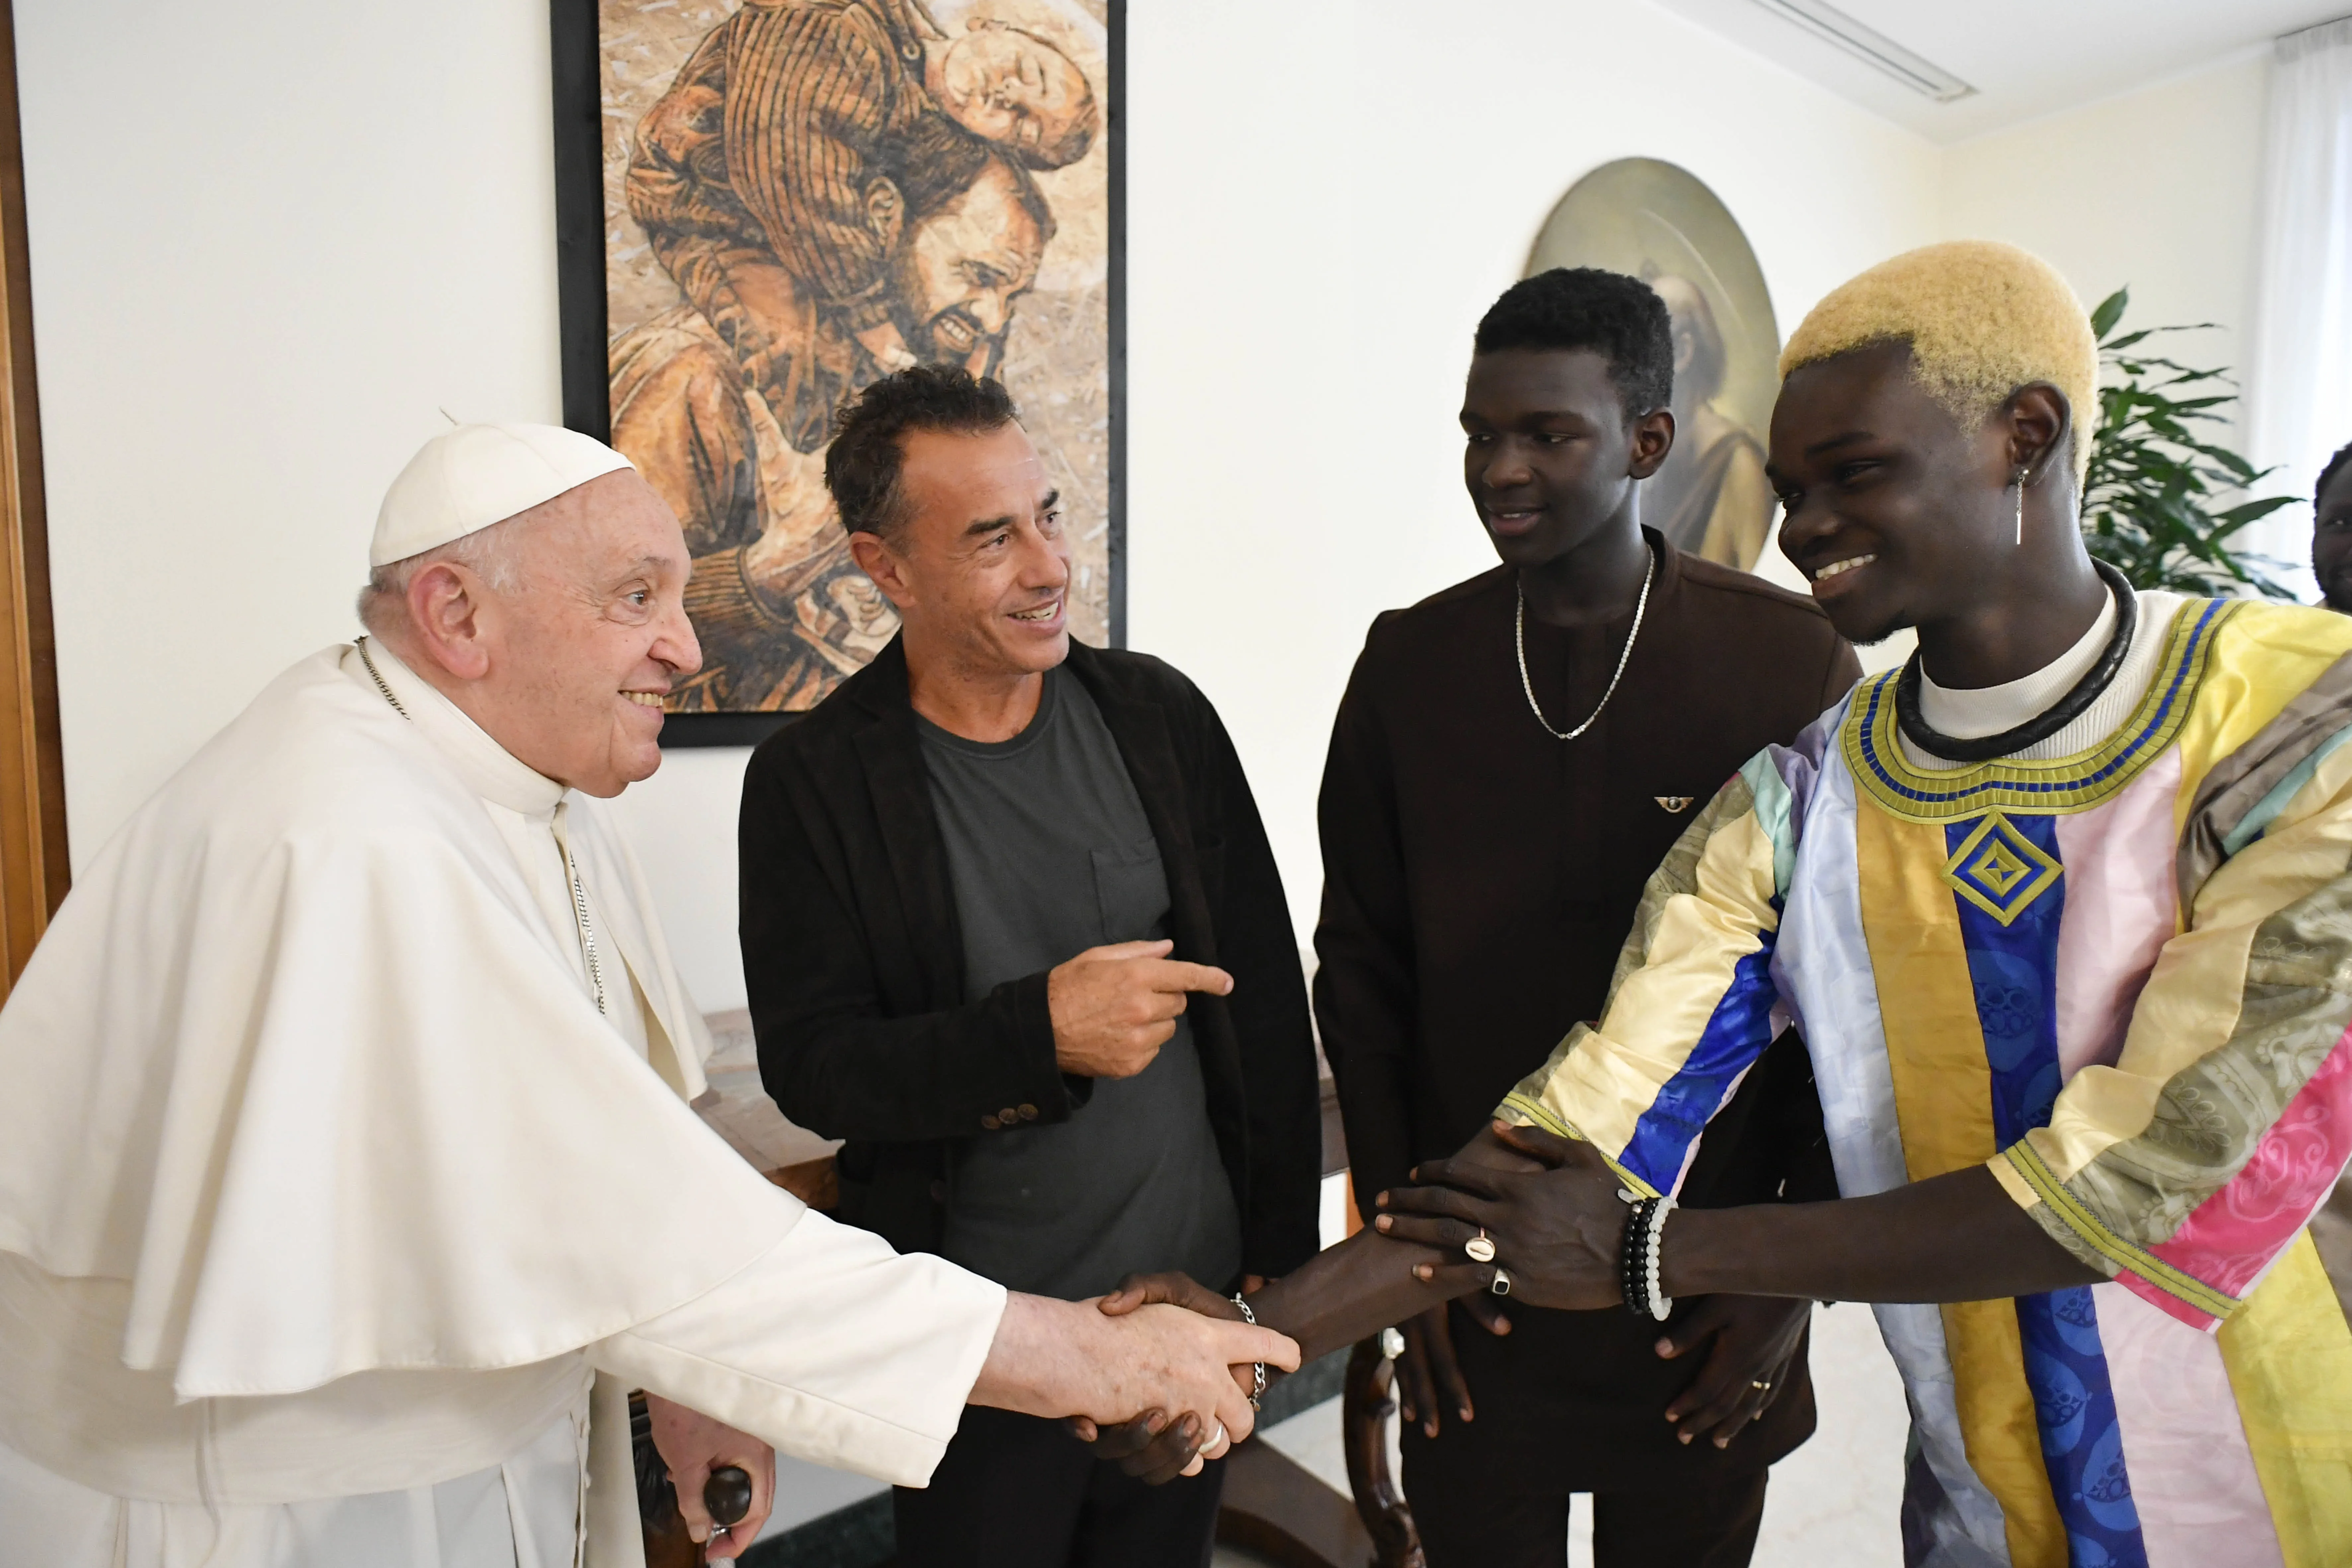 El Papa Francisco recibe en Santa Marta al director de cine Matteo Garrone y el elenco de la película "Io capitano" (Yo capitano)?w=200&h=150